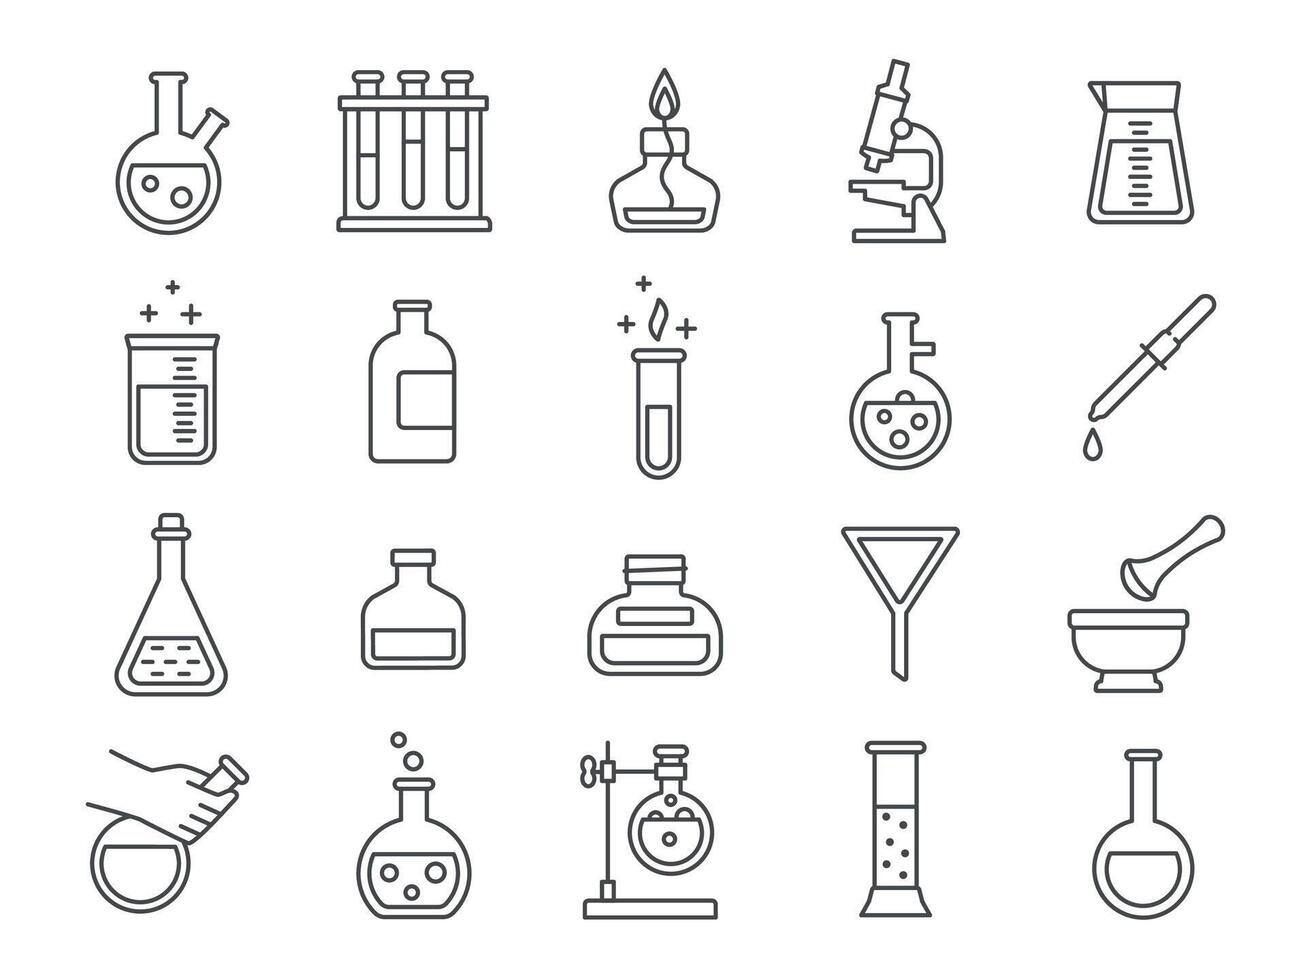 chimie ou science recherche laboratoire équipement ligne Icônes. pharmacie laboratoire verrerie, gobelets, tester tubes et flacons pictogrammes vecteur ensemble